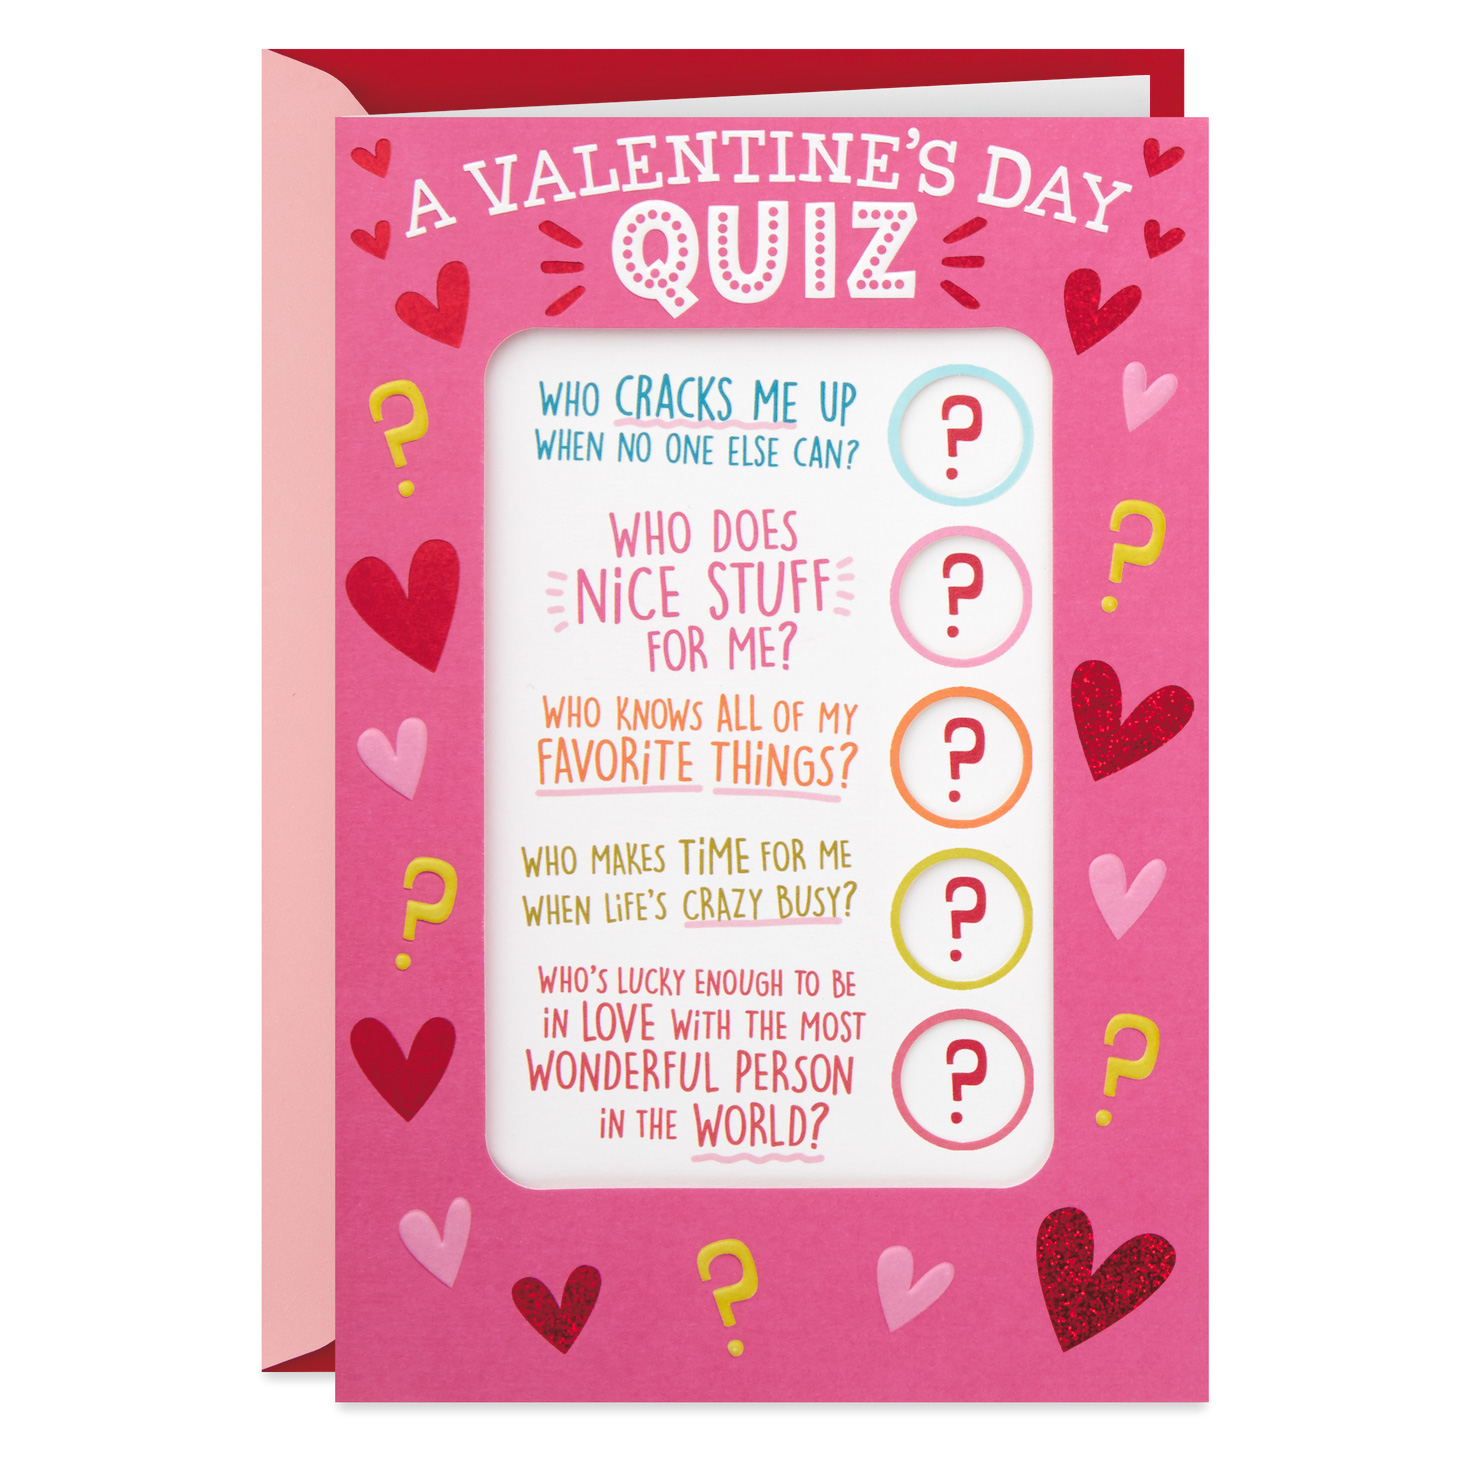 What to get my boyfriend for valentines day quiz